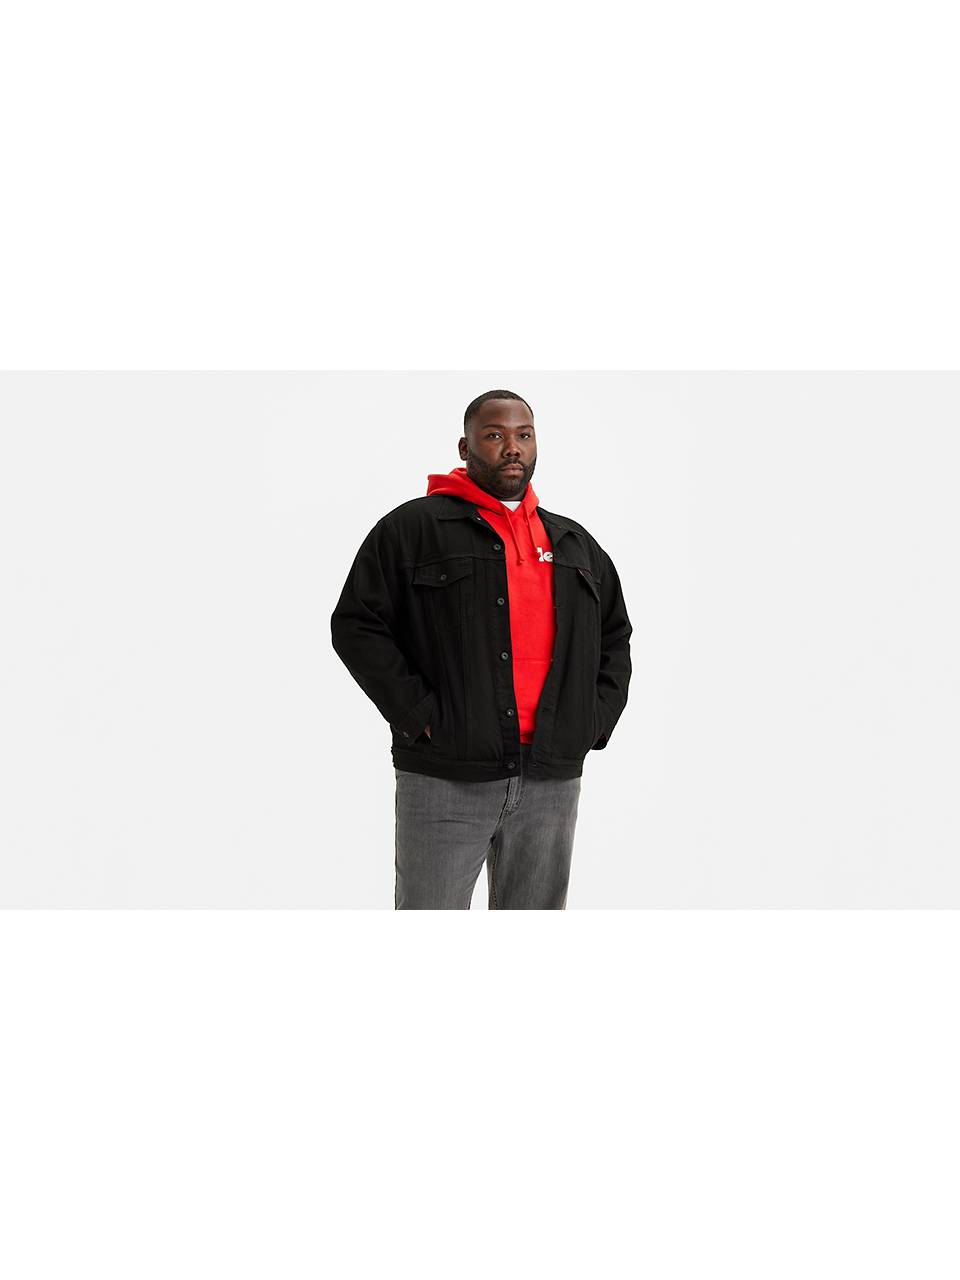 Shop Men's Jackets, Outerwear & Coats | Levi's® US